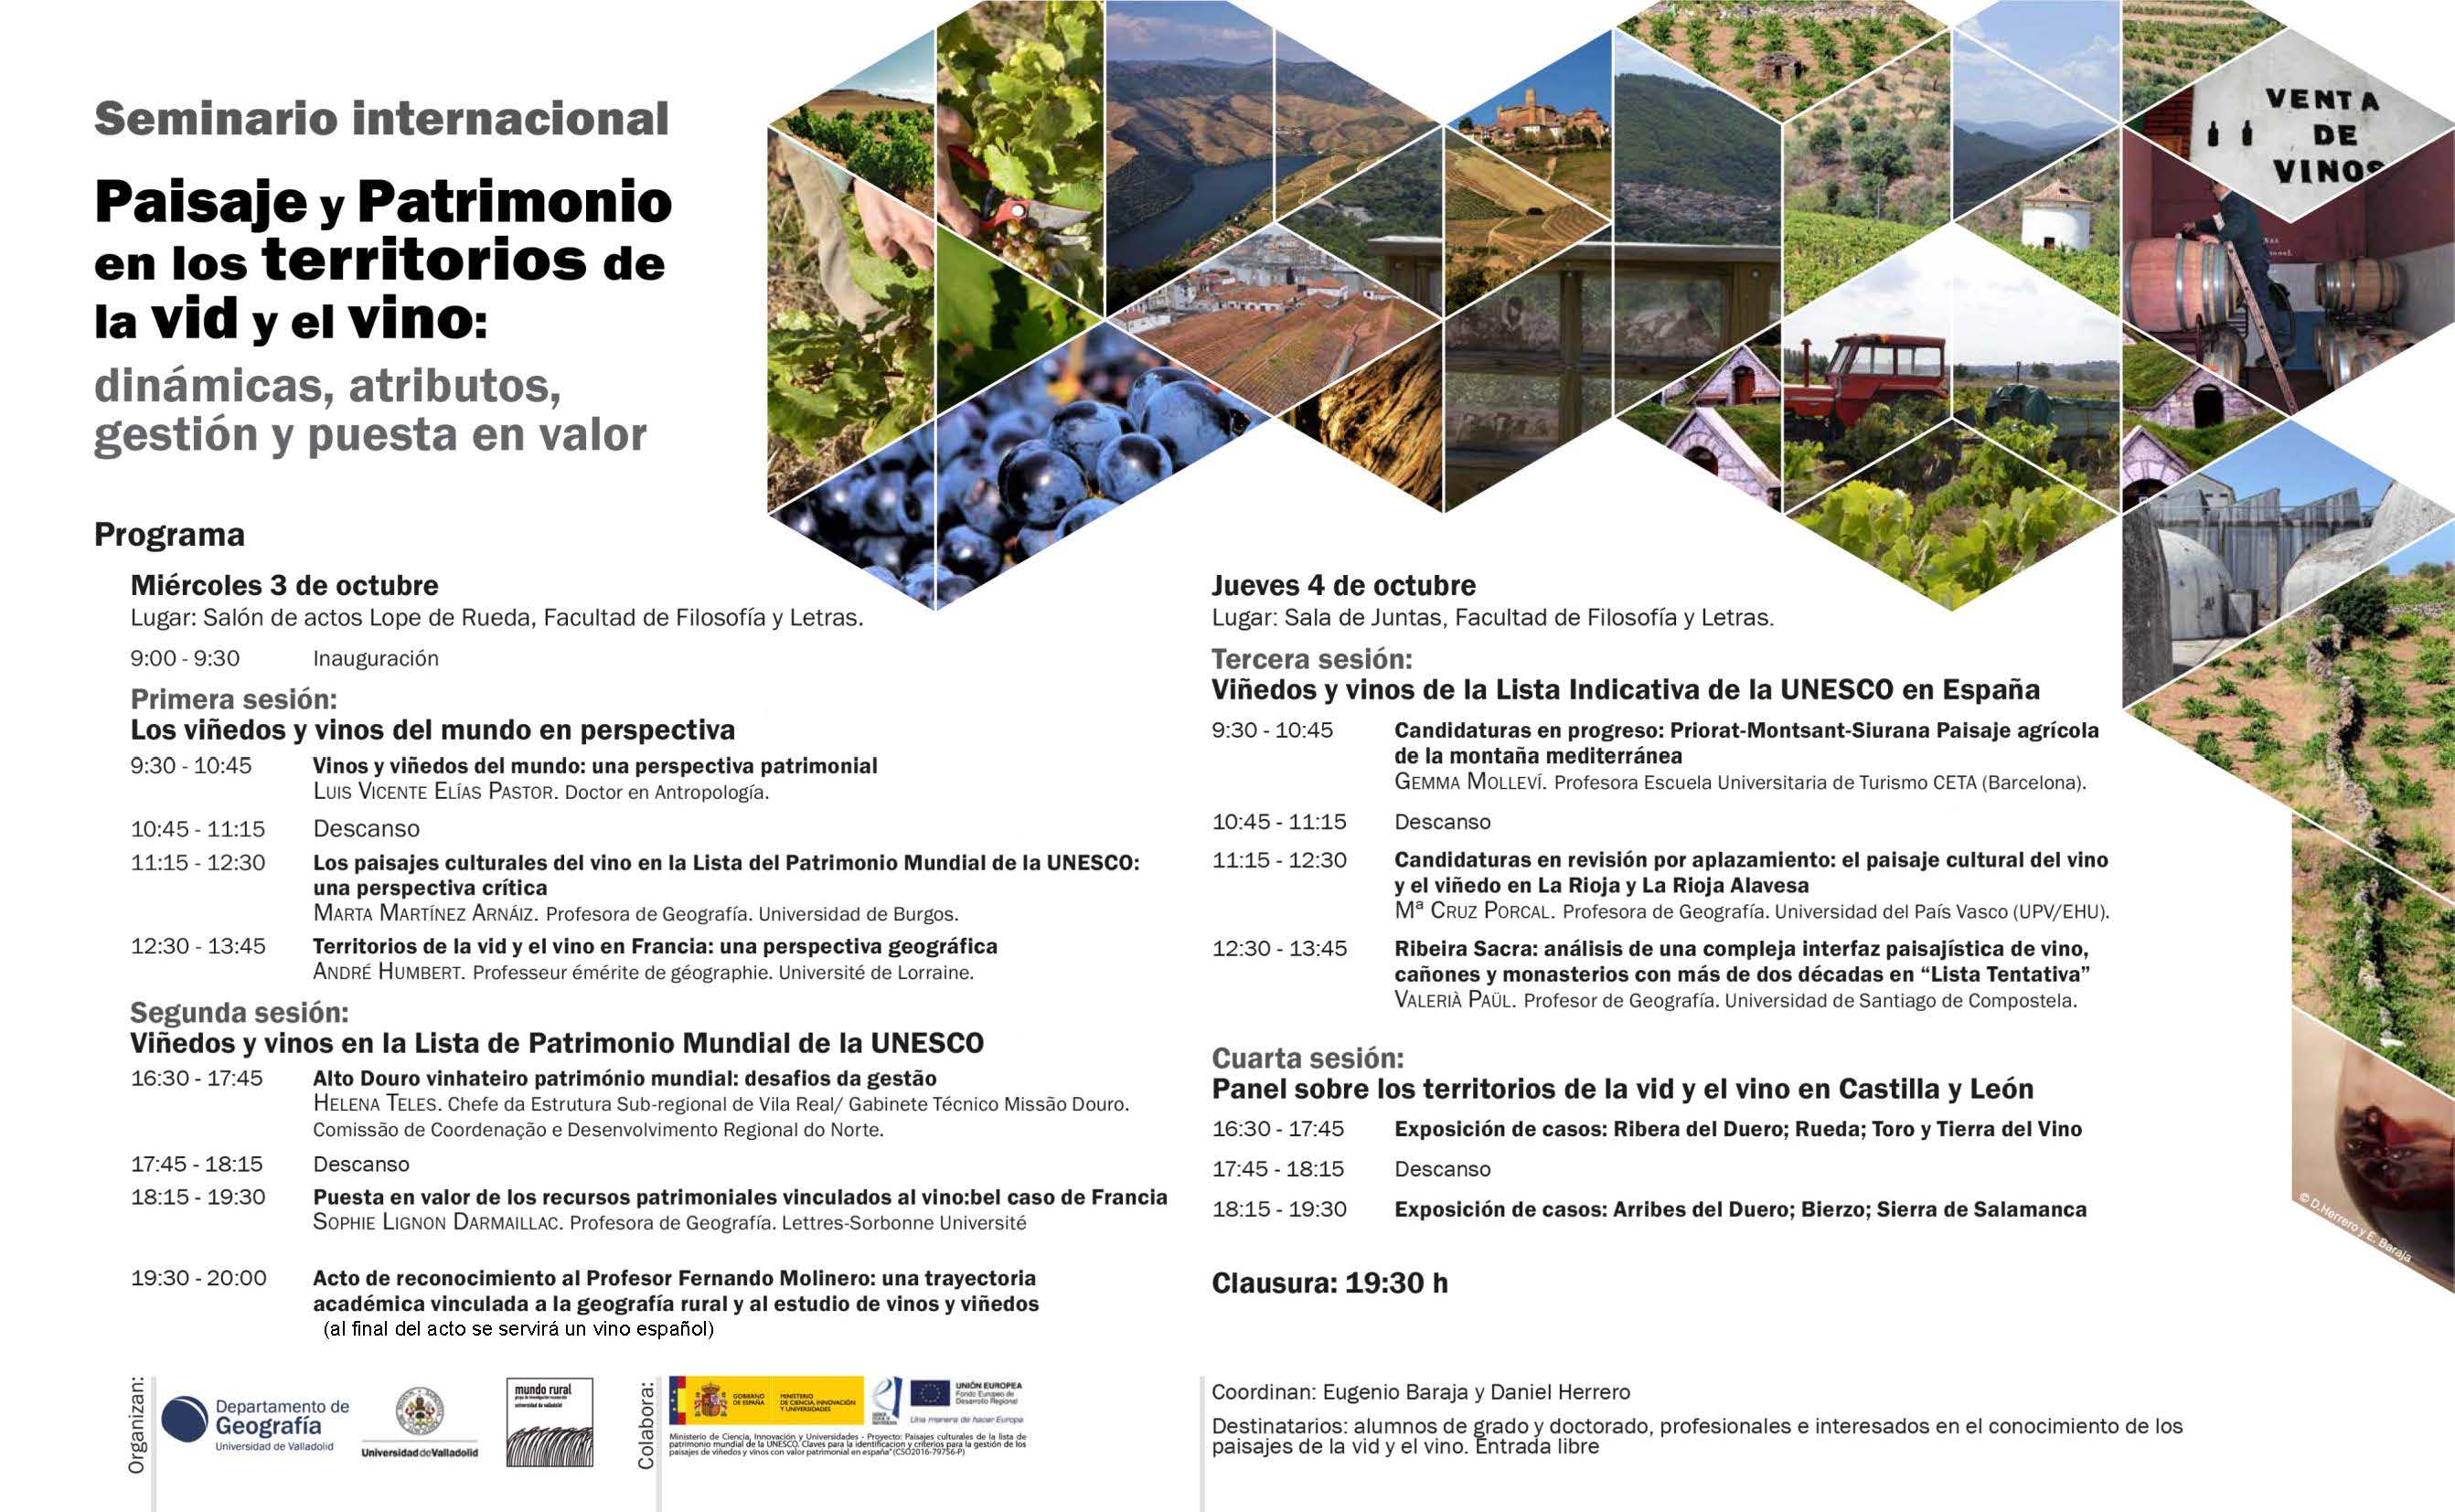 Seminario Internacional: Paisaje y Patrimonio en los territorios de la vid y el vino